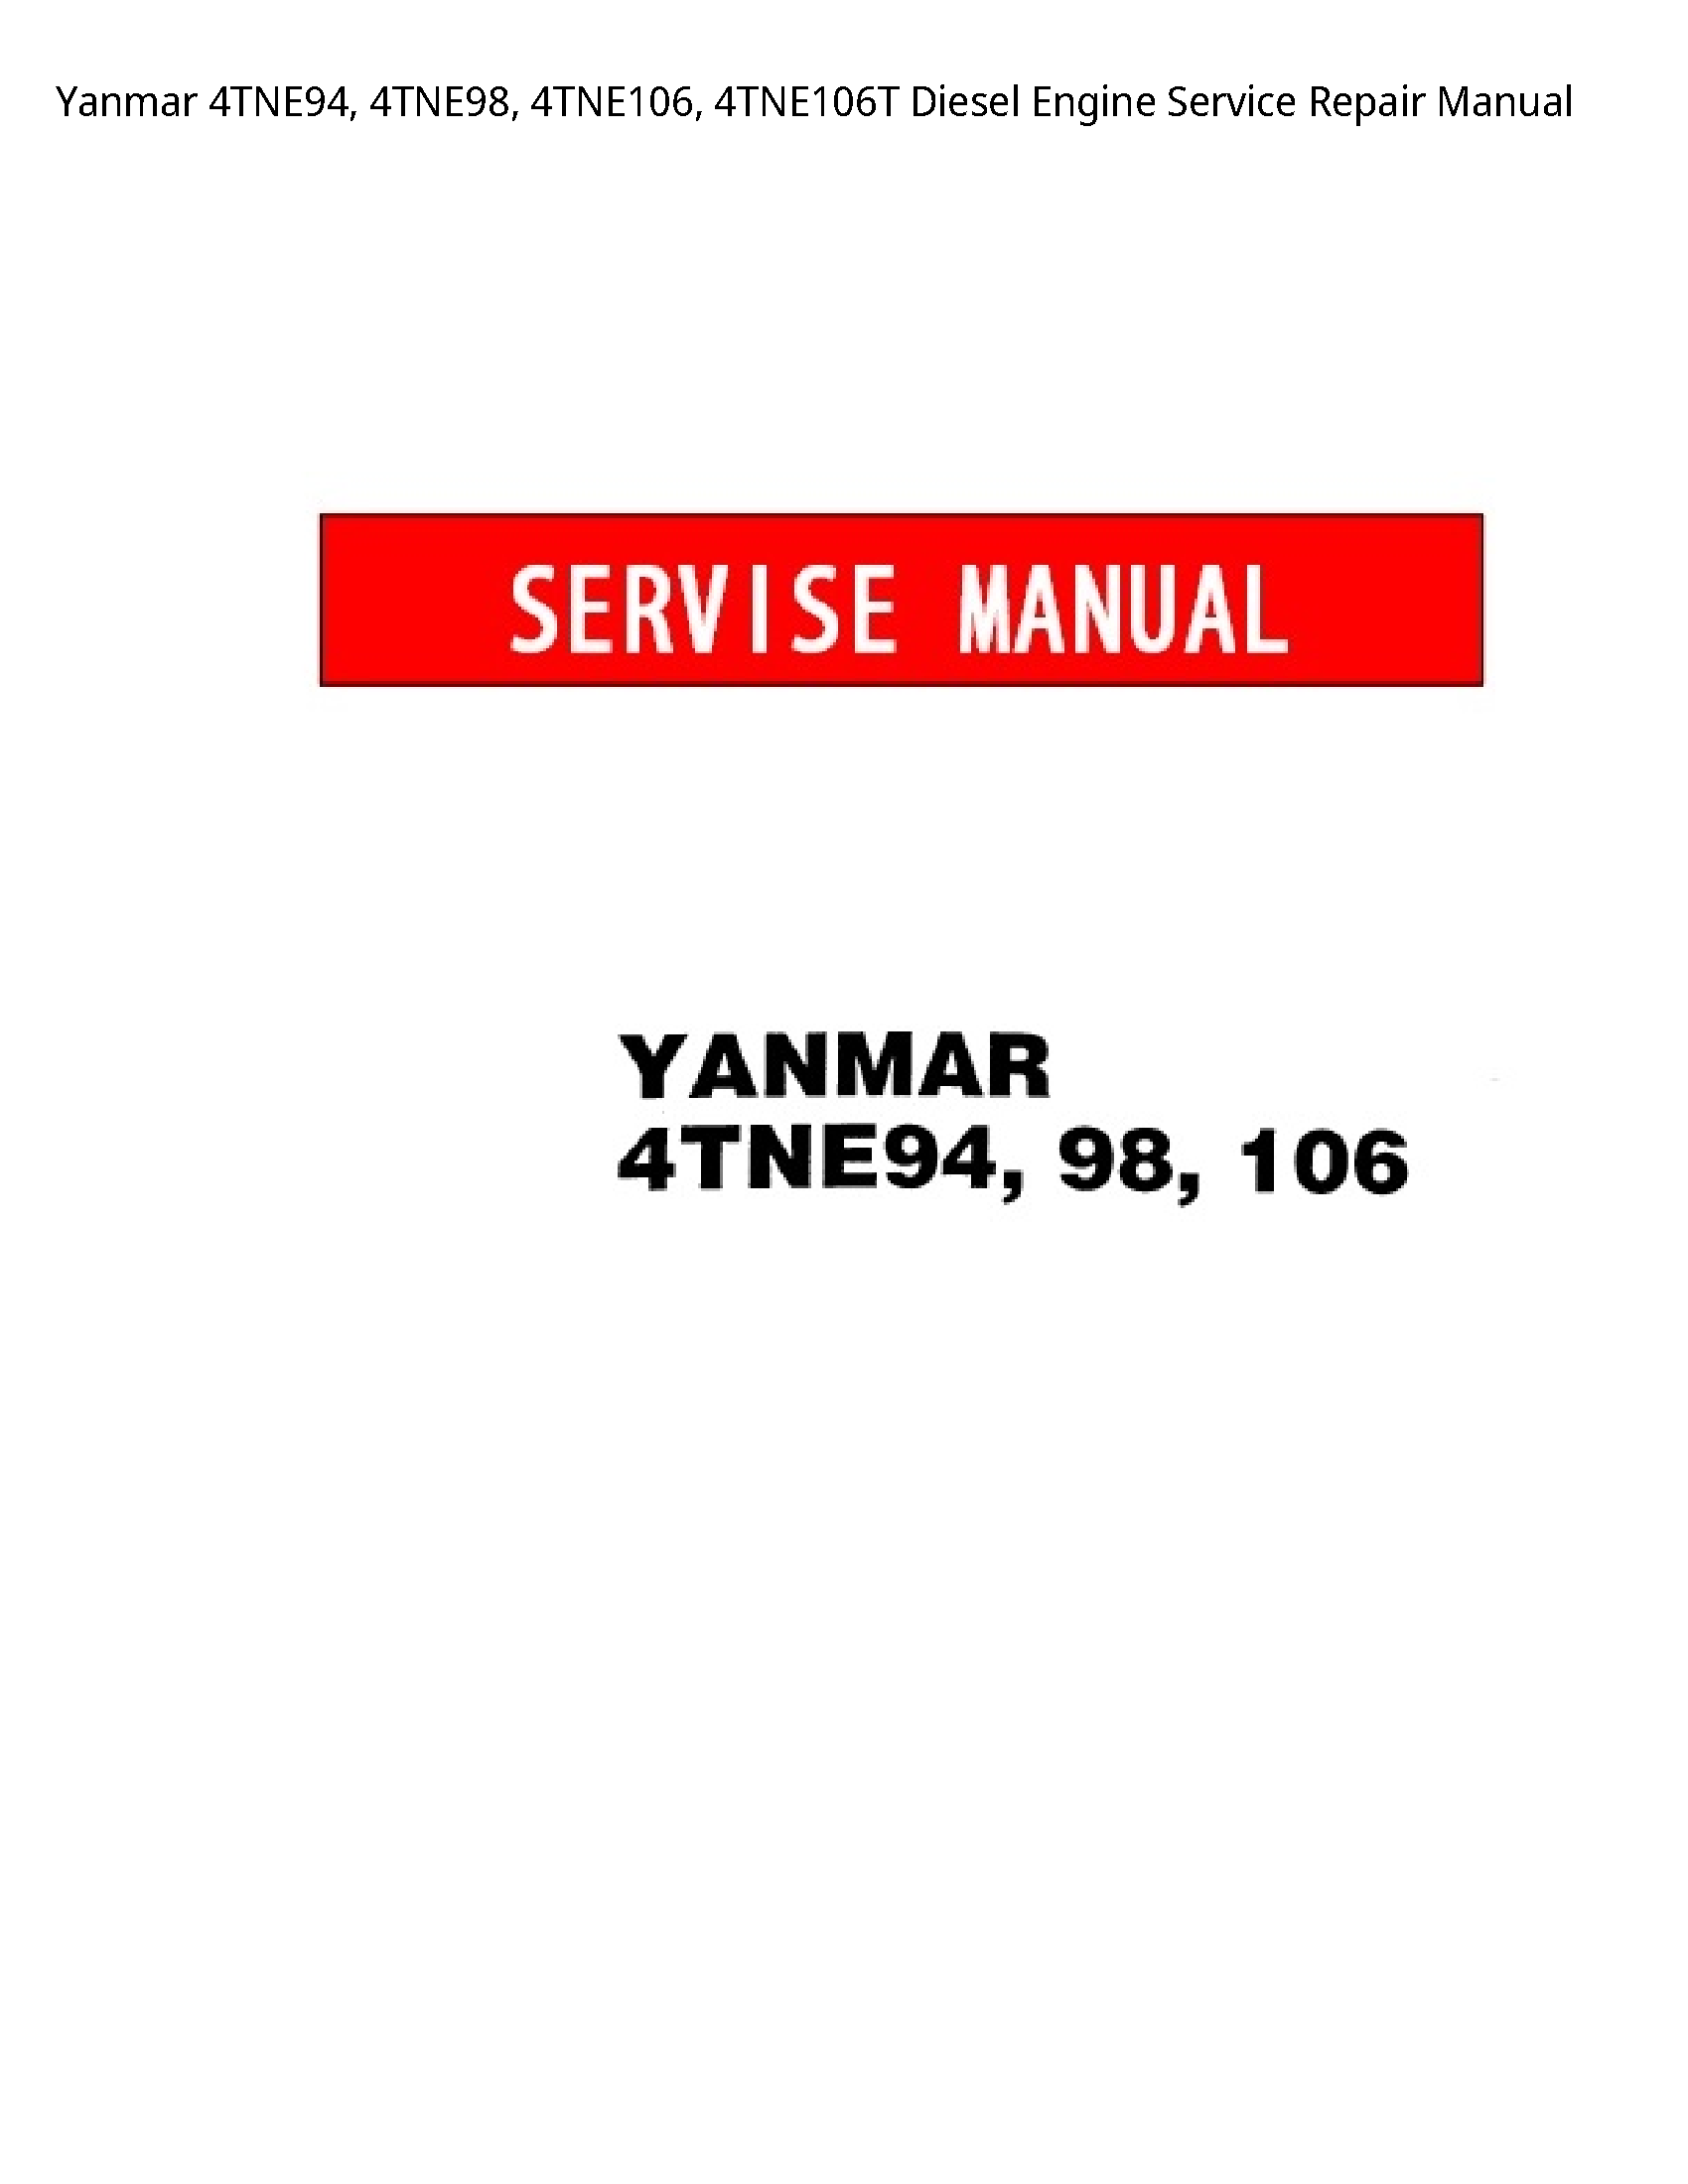 Yanmar 4TNE94 Diesel Engine manual